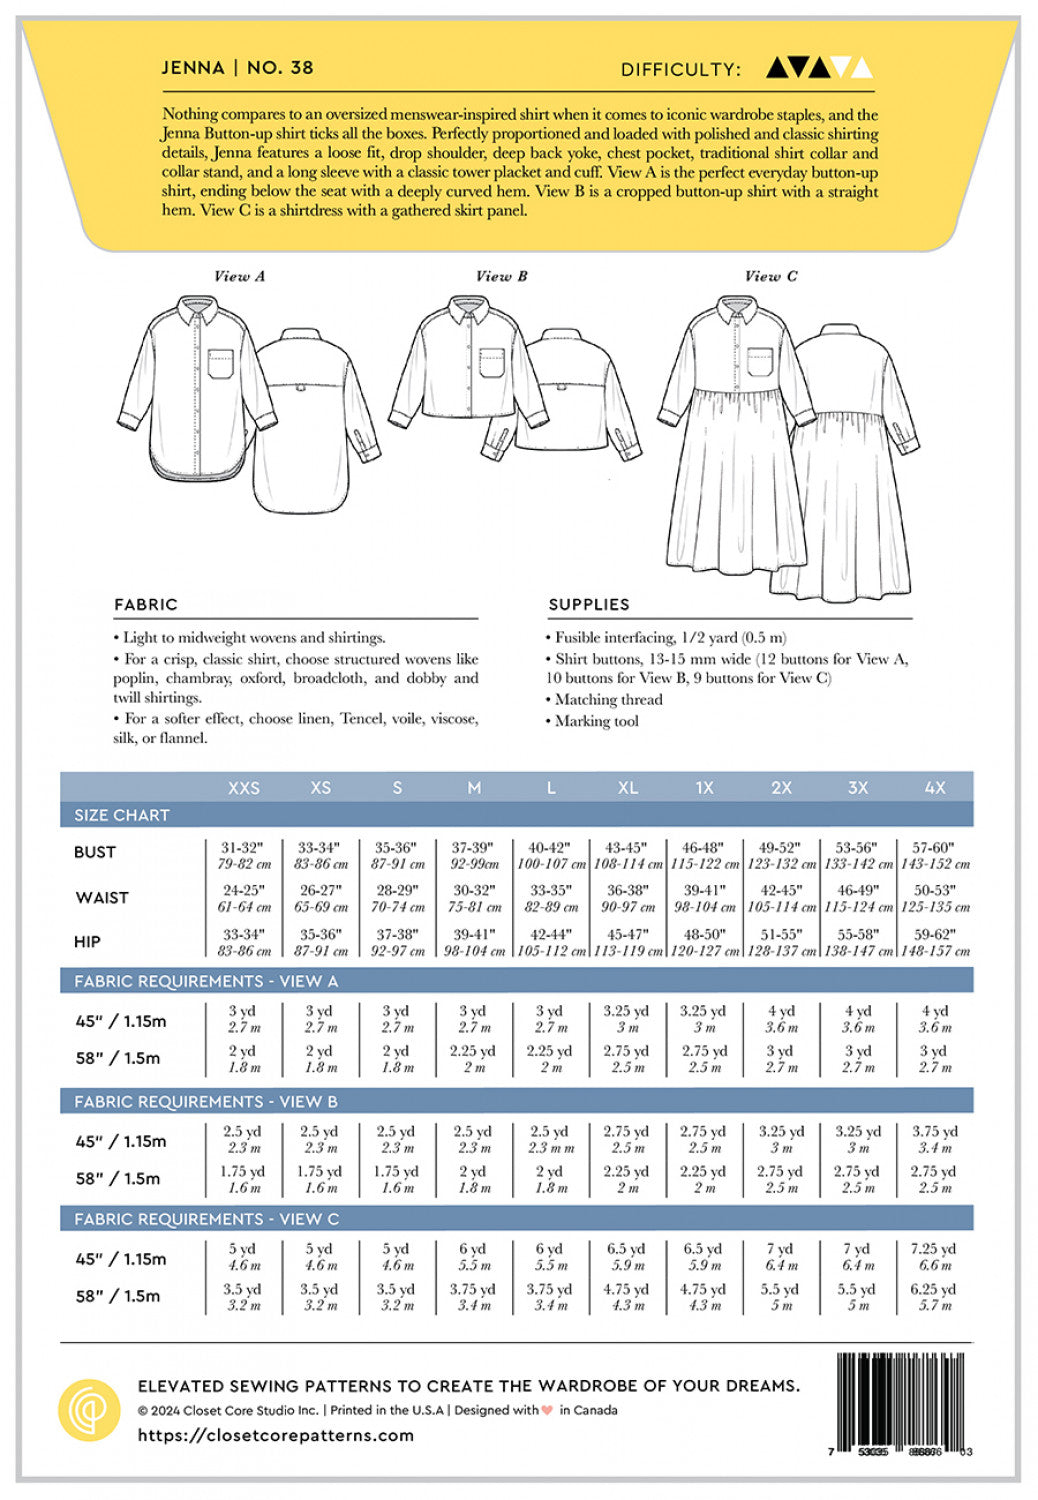 Jenna Button Up Shirt & Dress - By Closet Core Patterns